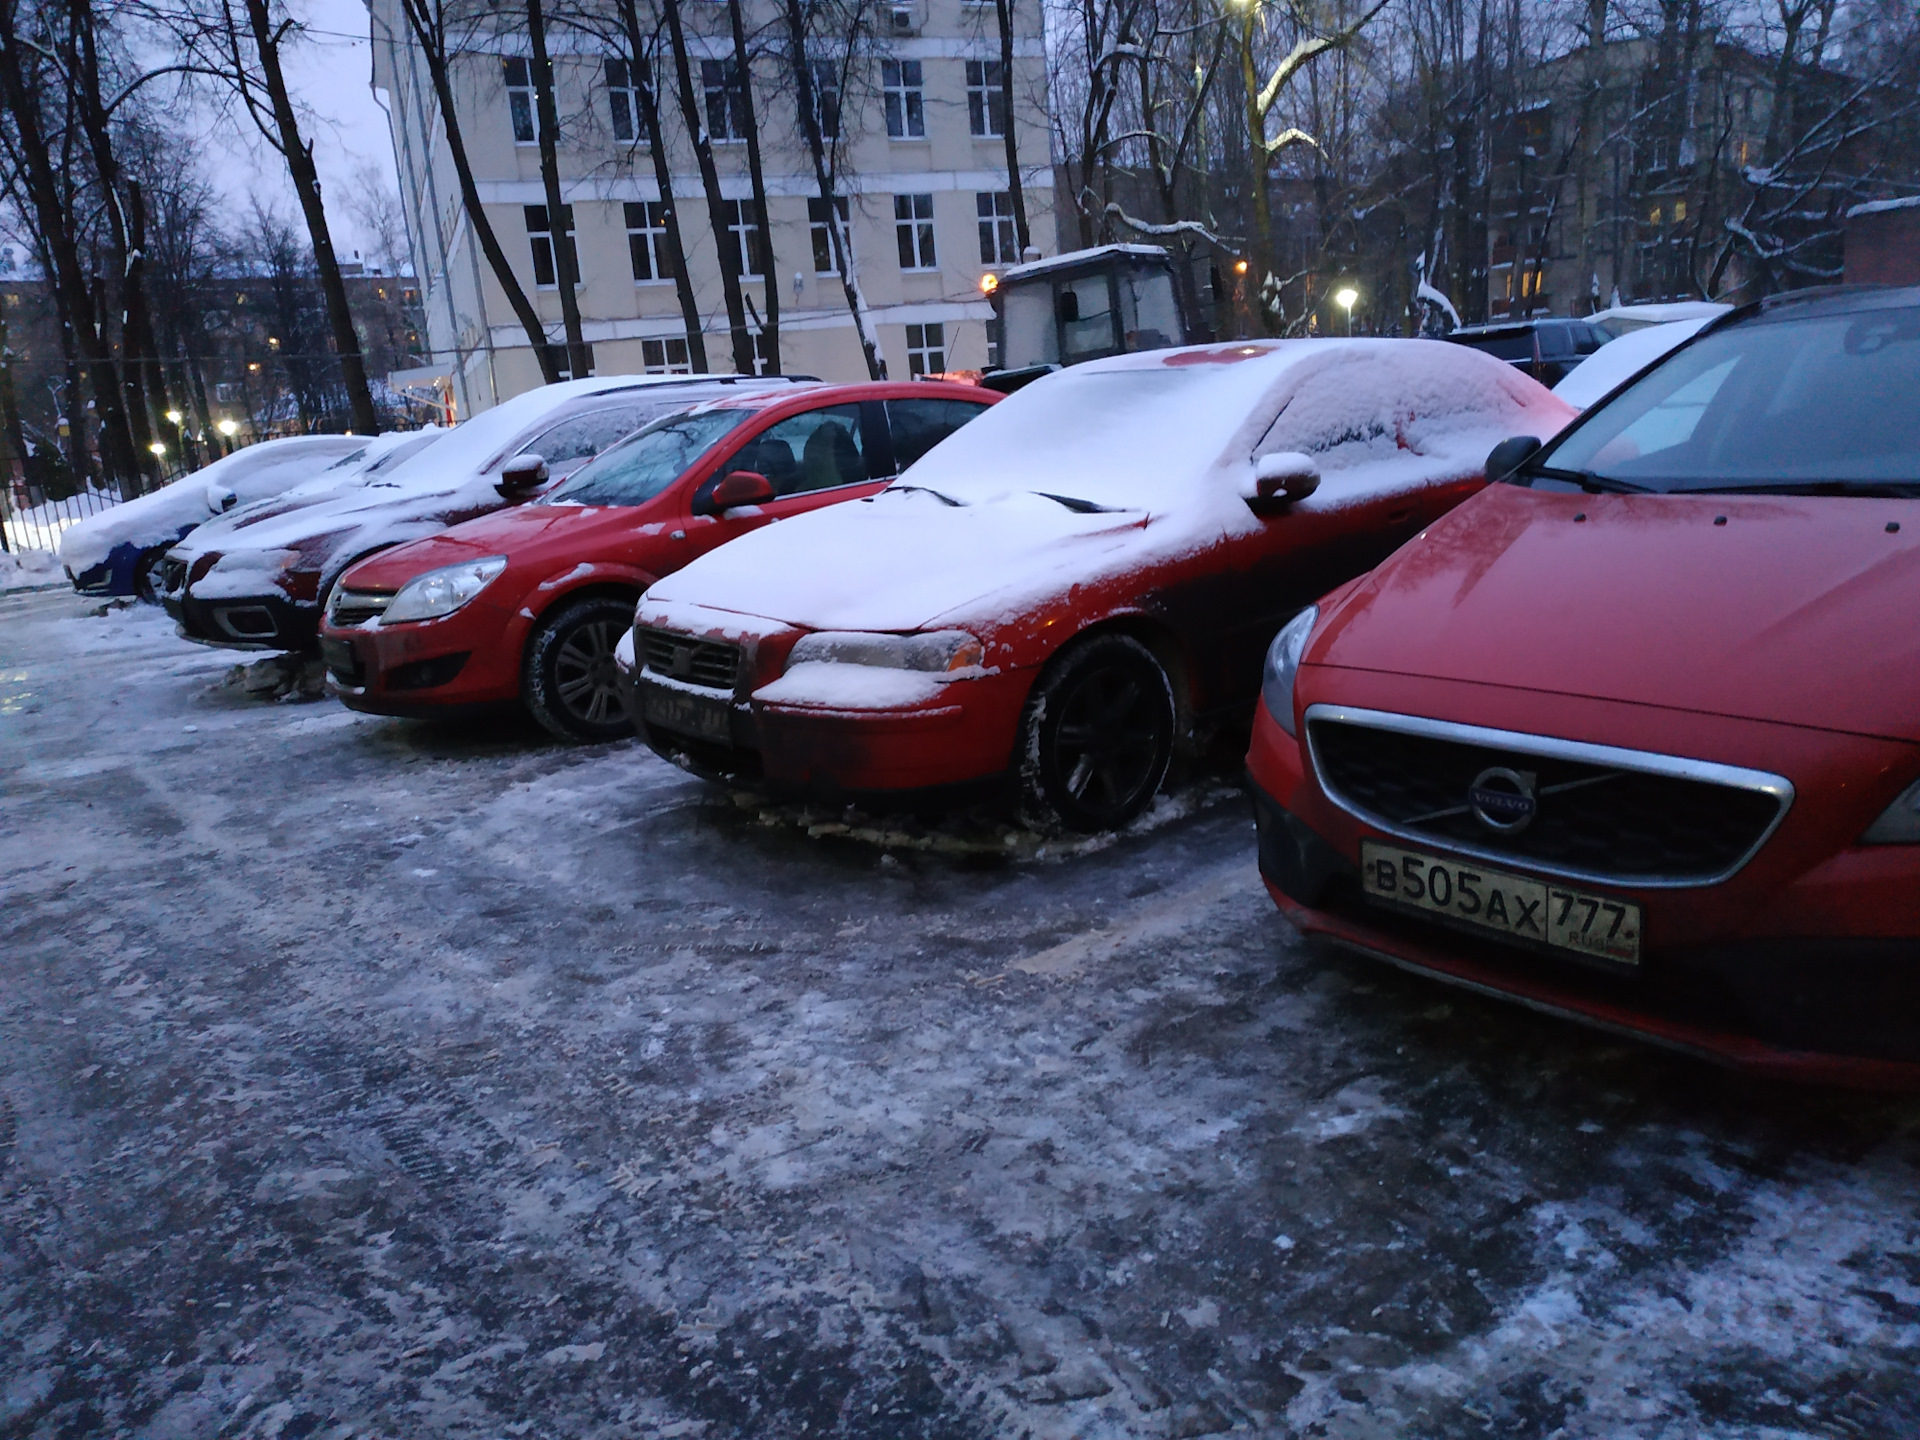 Где красненькая. Парковка красных машин. Красная машина обычная. Много красных машин. Три красные машины.